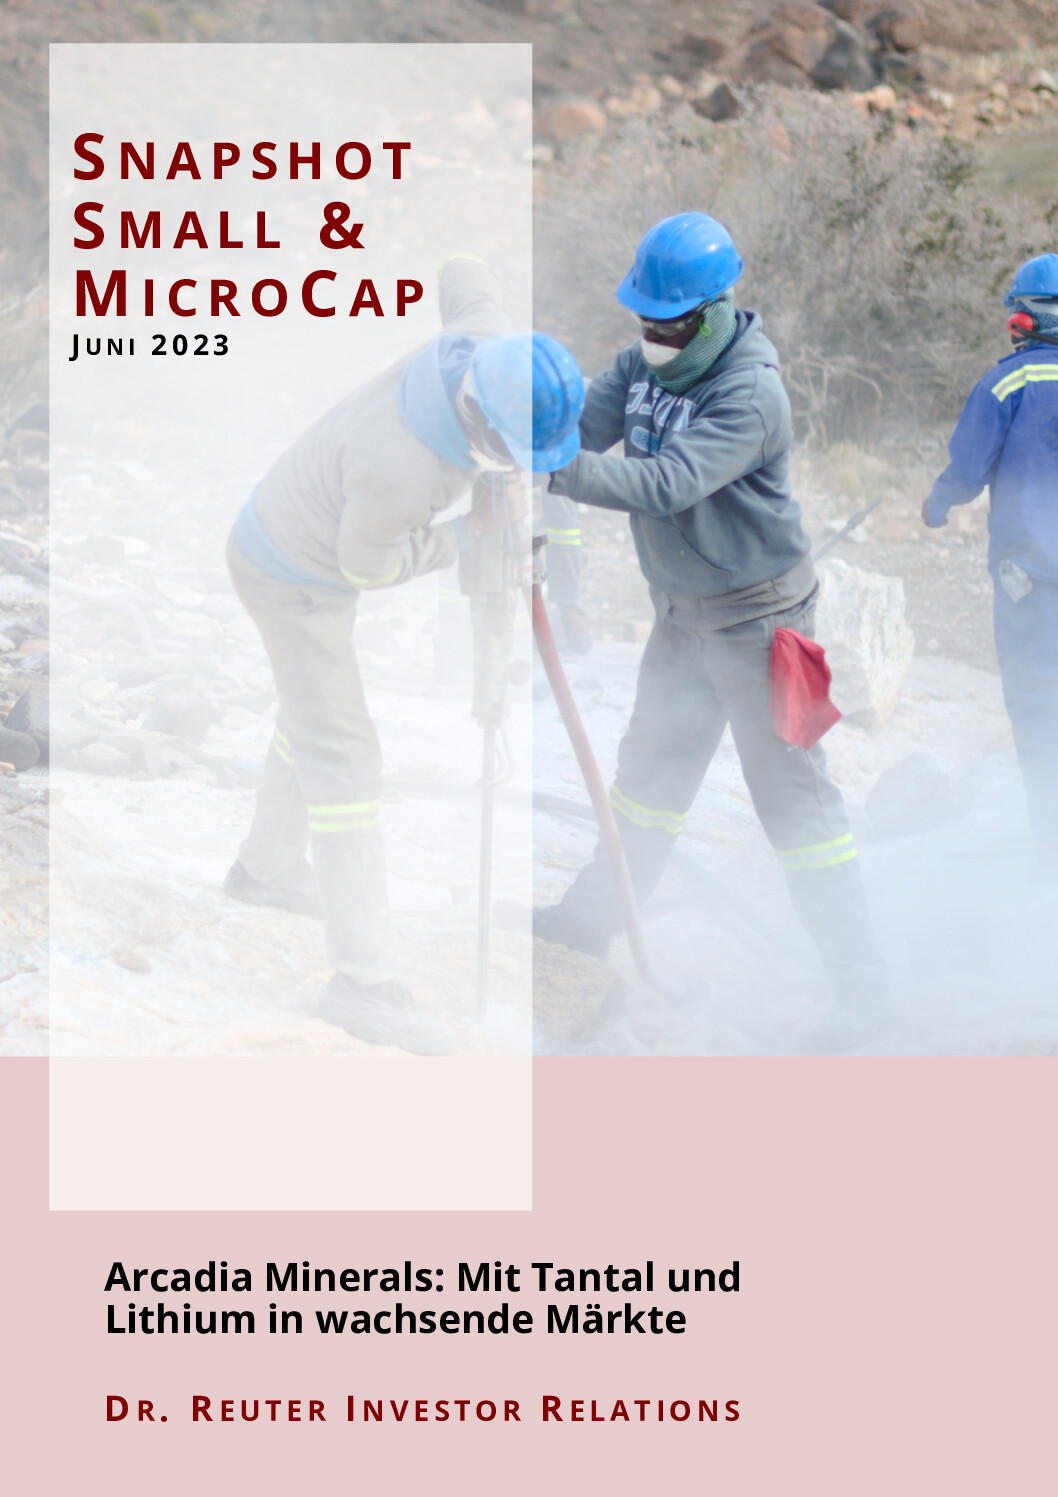 05.06.2023 Arcadia Minerals: Mit Tantal und Lithium in wachsende Märkte